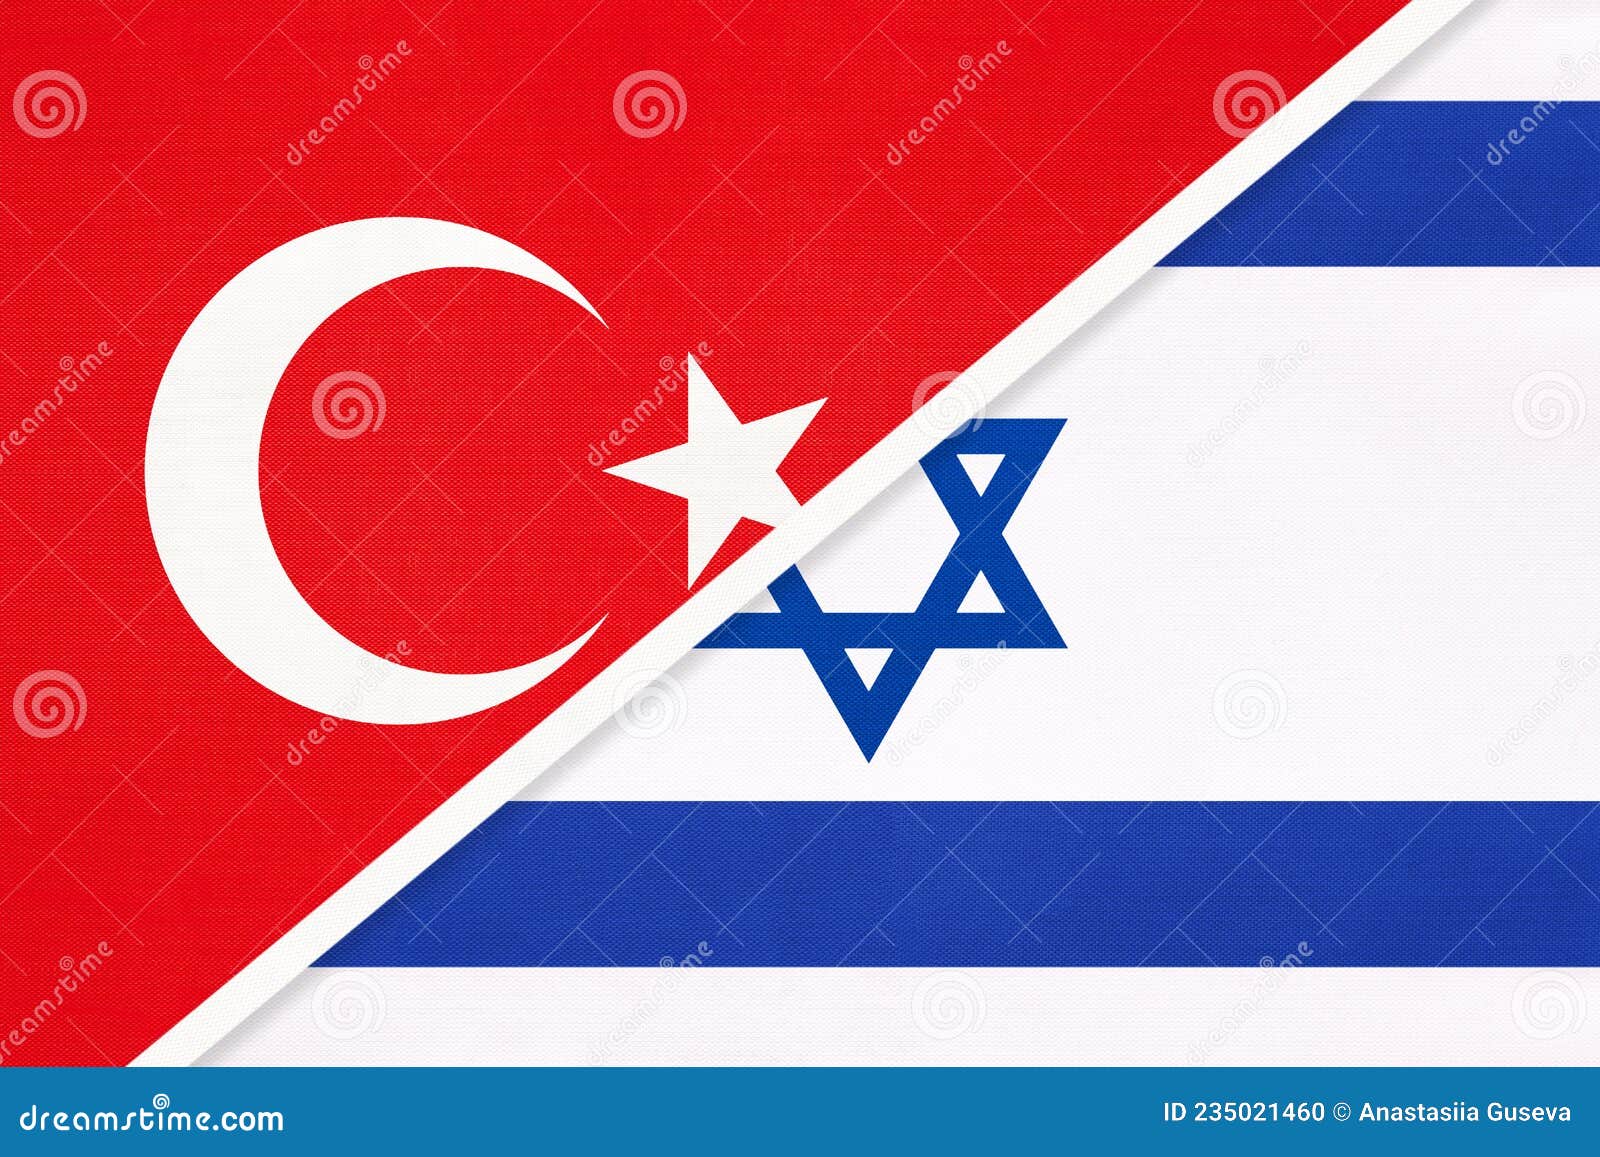 以色列总理与土耳其总统就两国全面恢复外交关系通电话_北晚在线